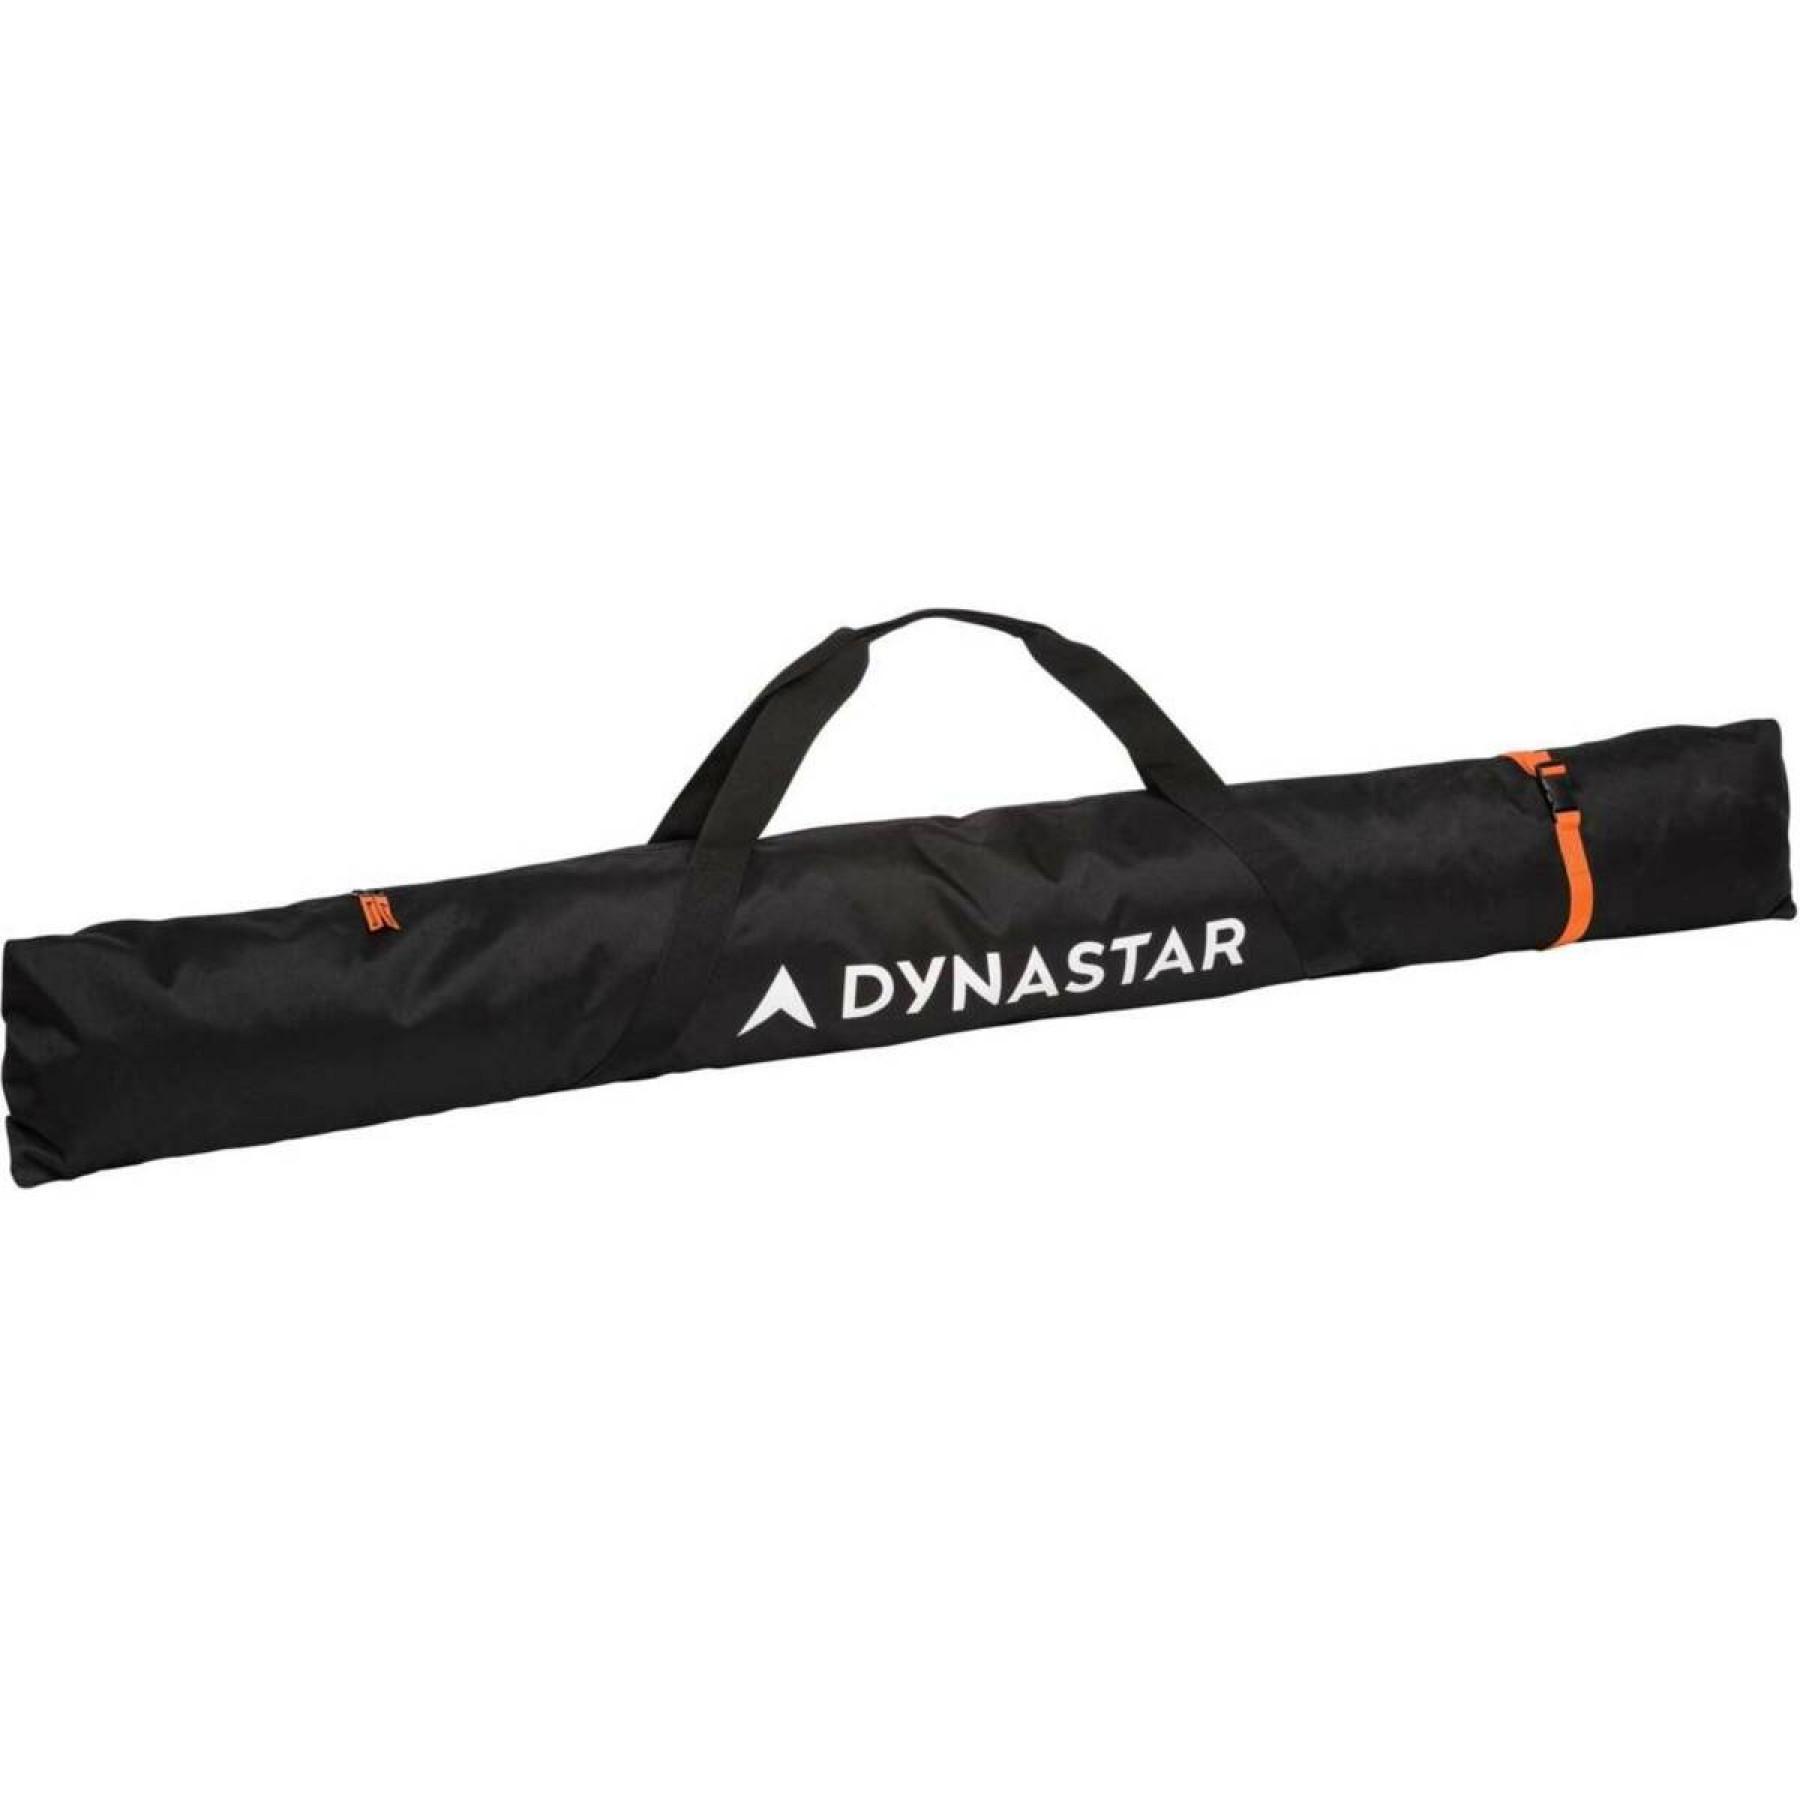 Ski bag Dynastar basic 185 cm